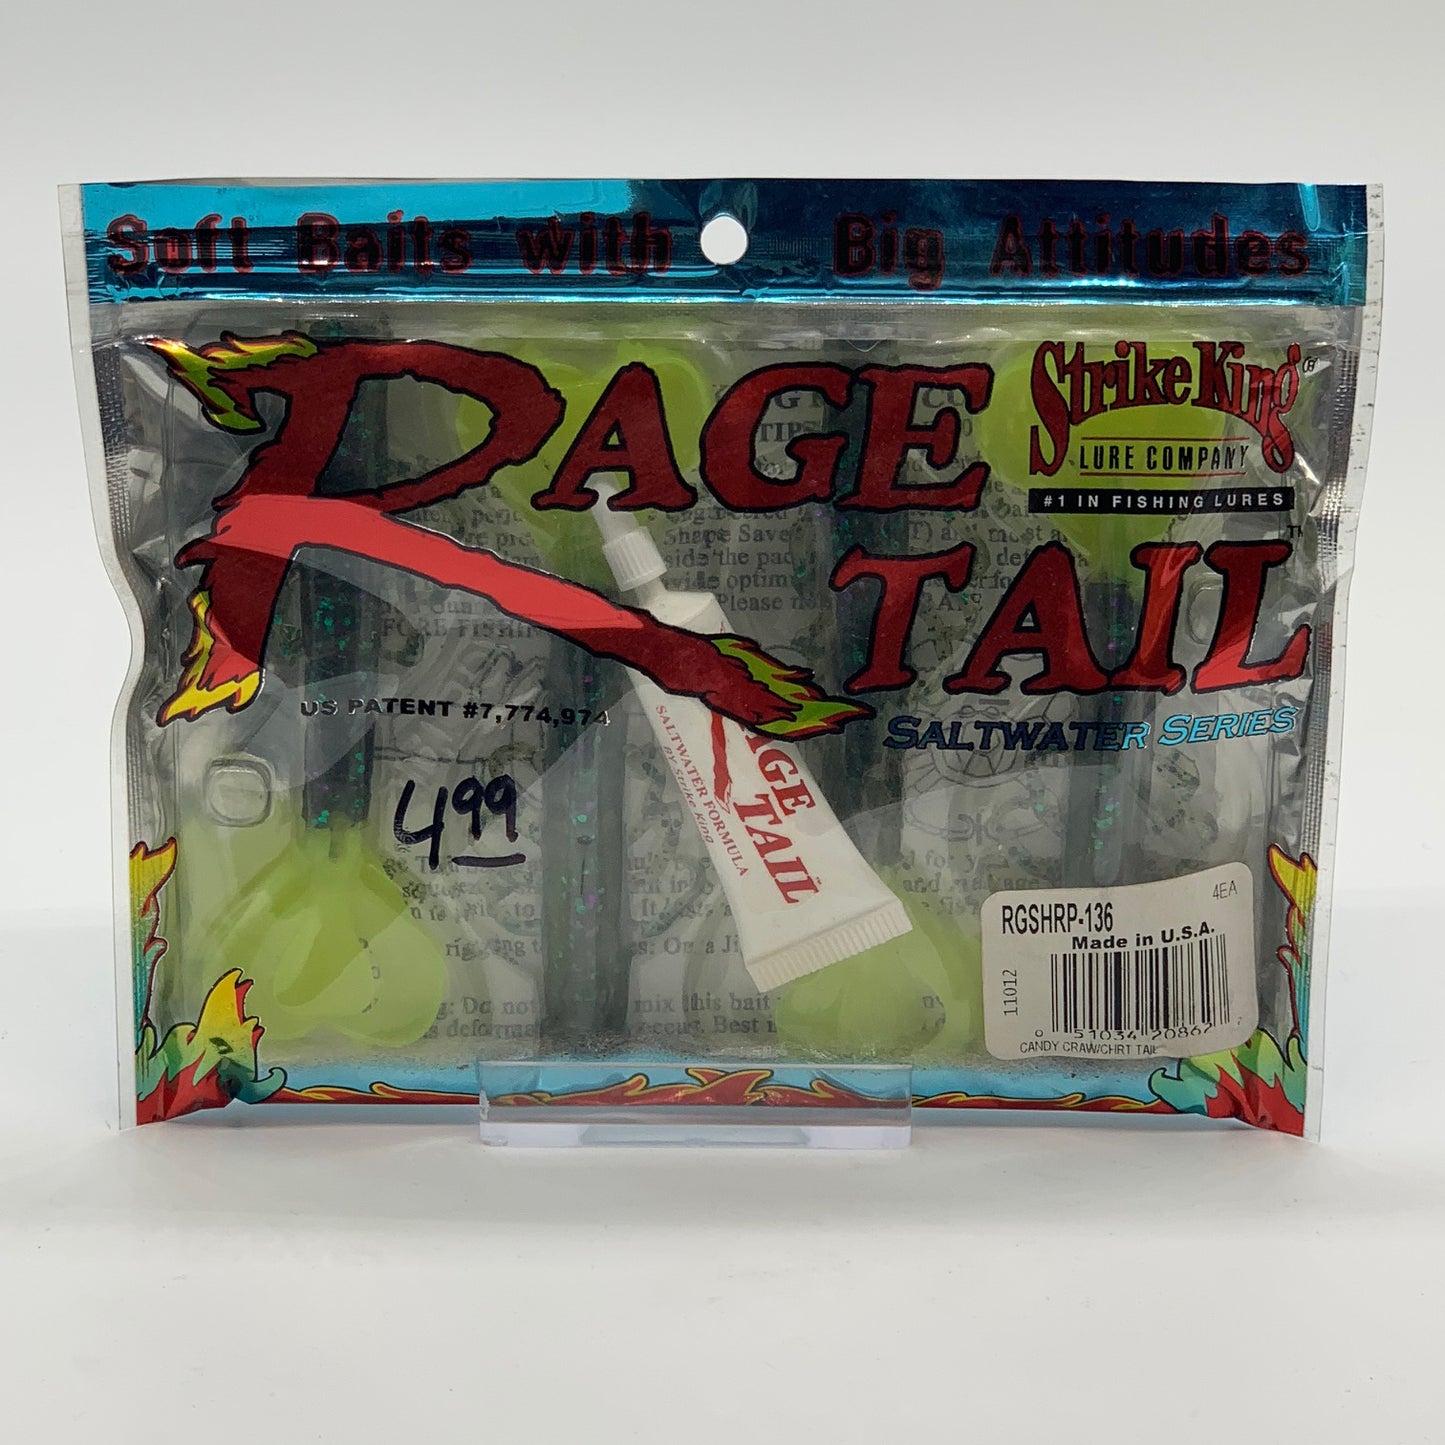 Strike King Rage Tail Salt Water Series Candy Craw